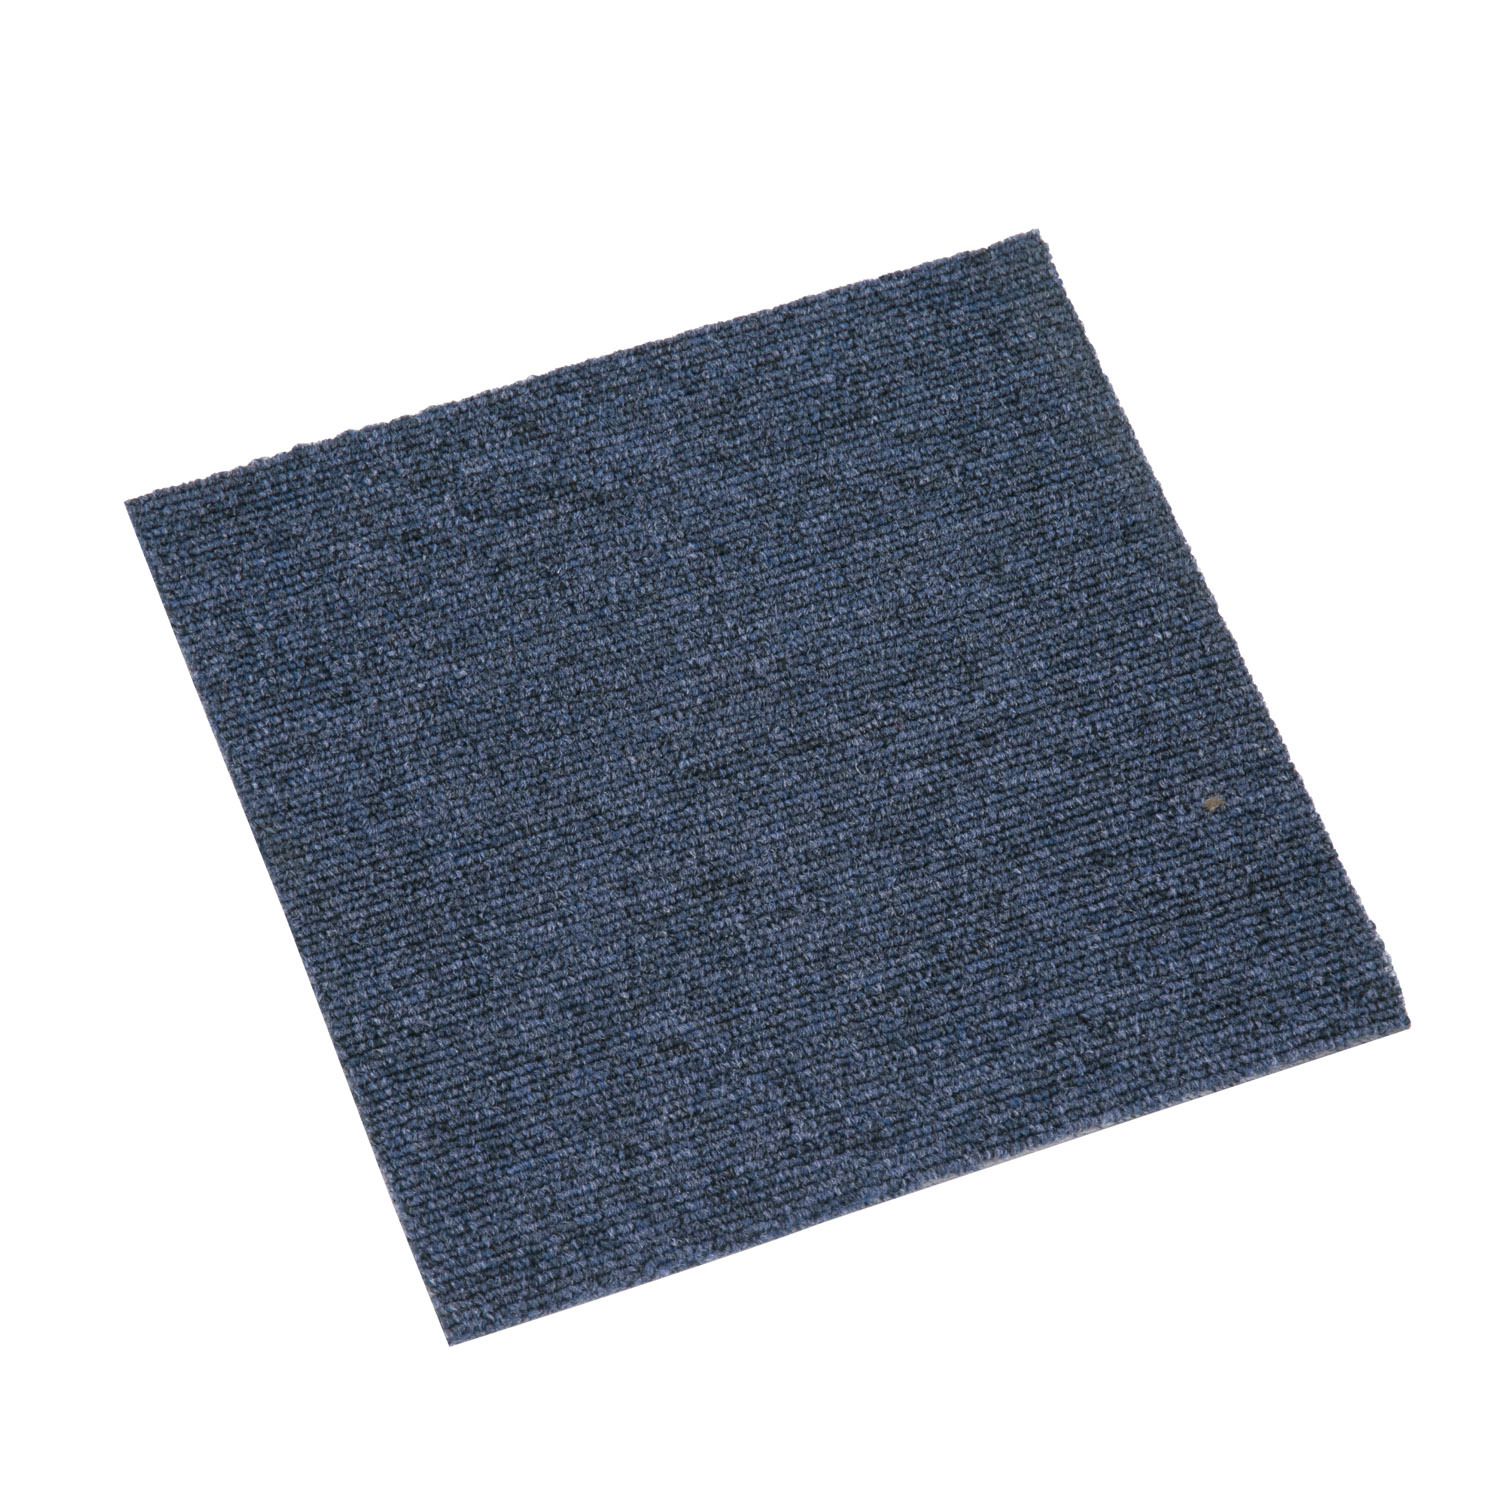 Azulejos de alfombra blanca impermeable para el hogar